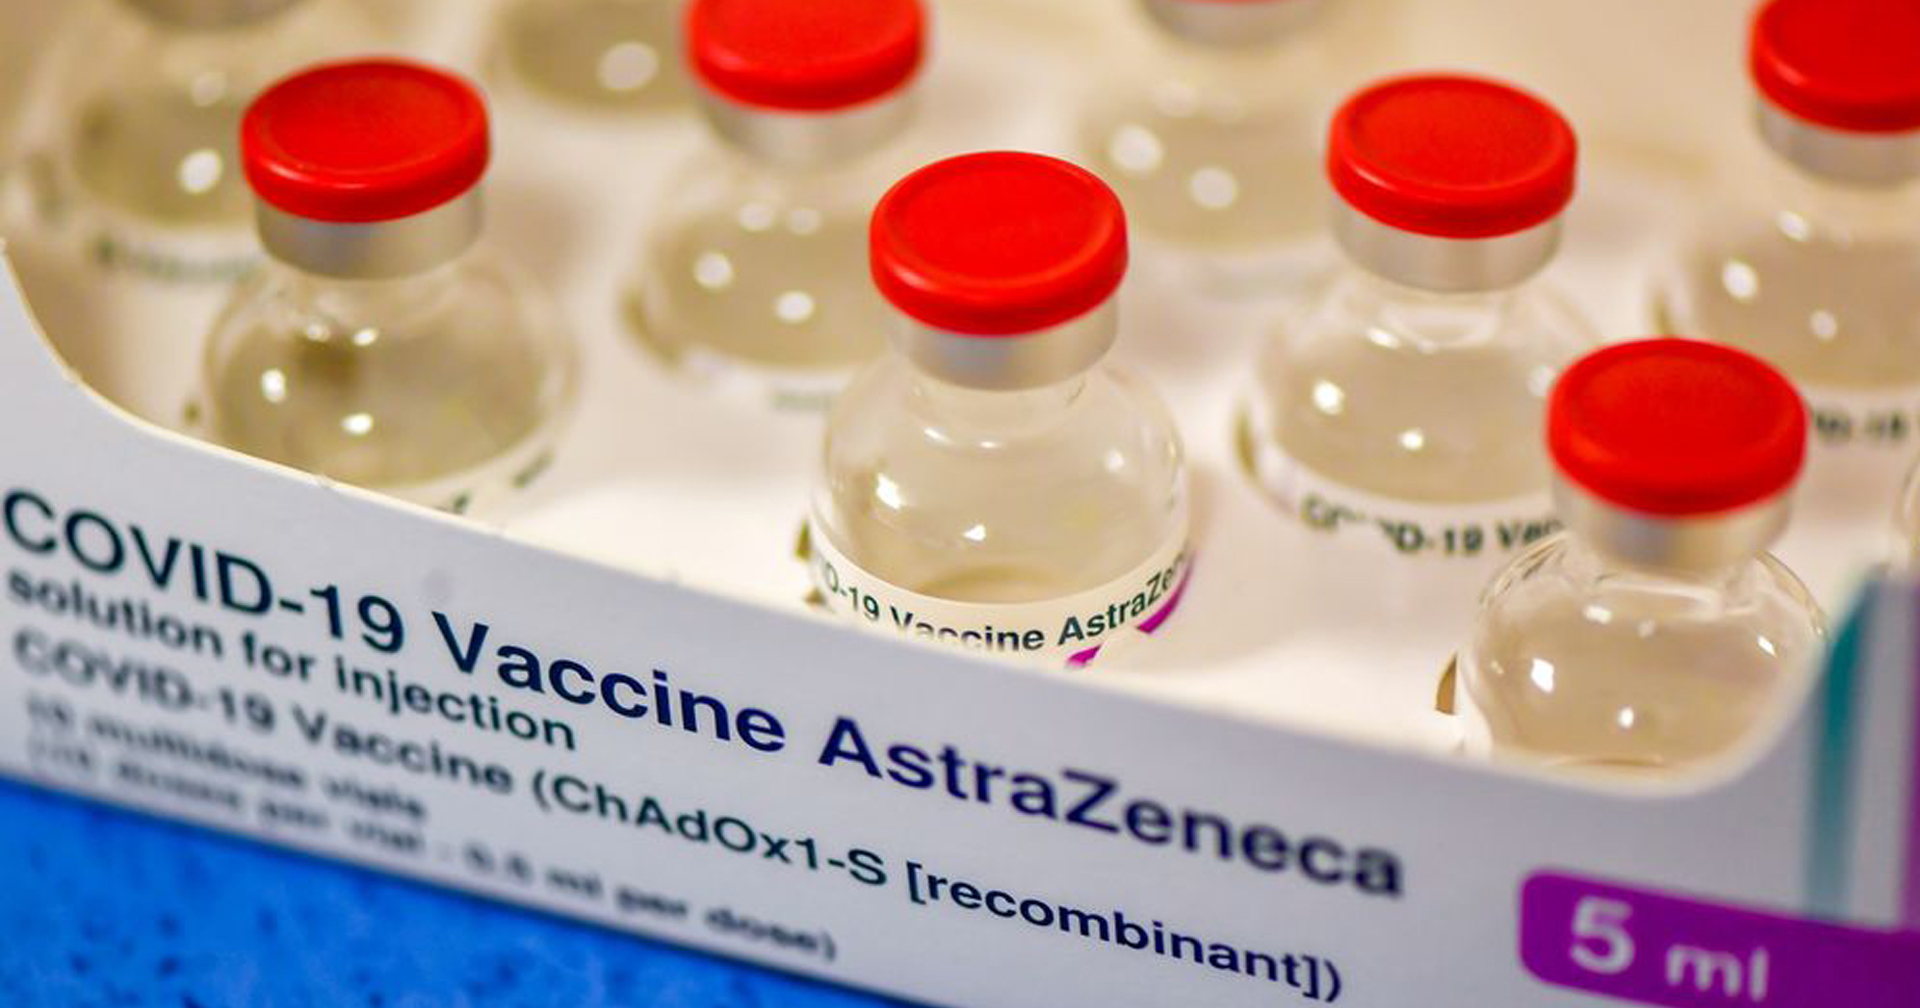 WHO รับรองวัคซีน AstraZeneca ที่ผลิตจากบริษัท Siam Bioscience แล้ว